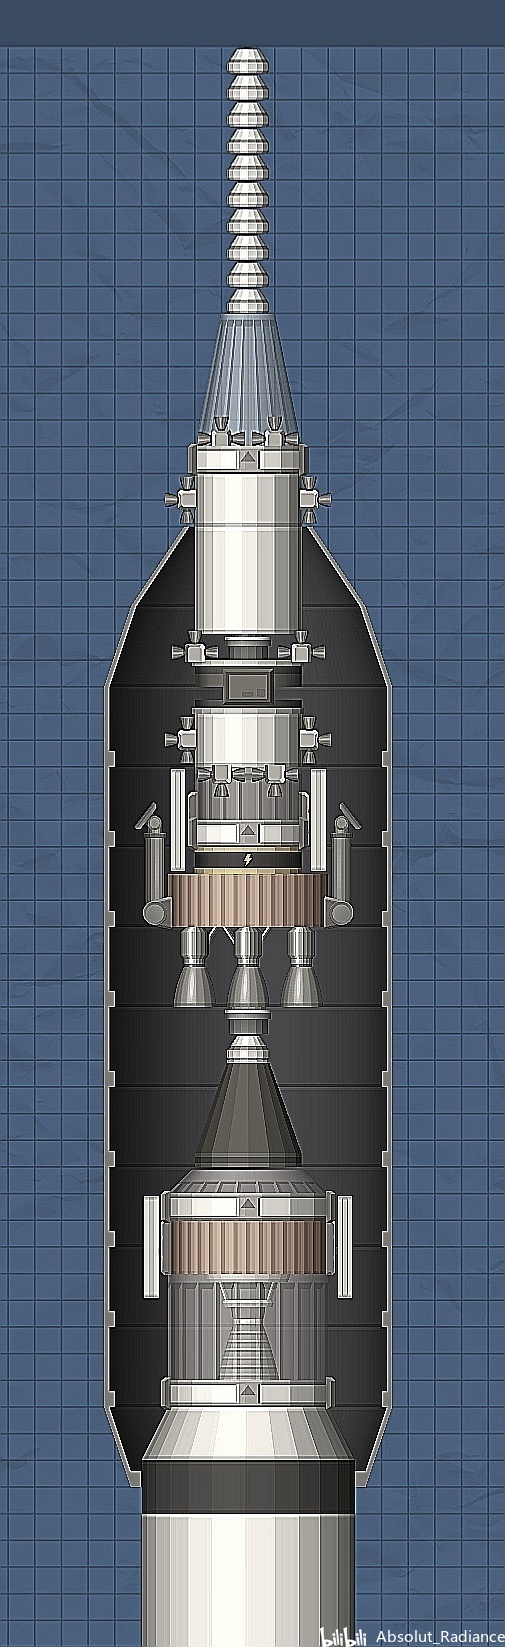 长征运载火箭丙型:箭顶结构